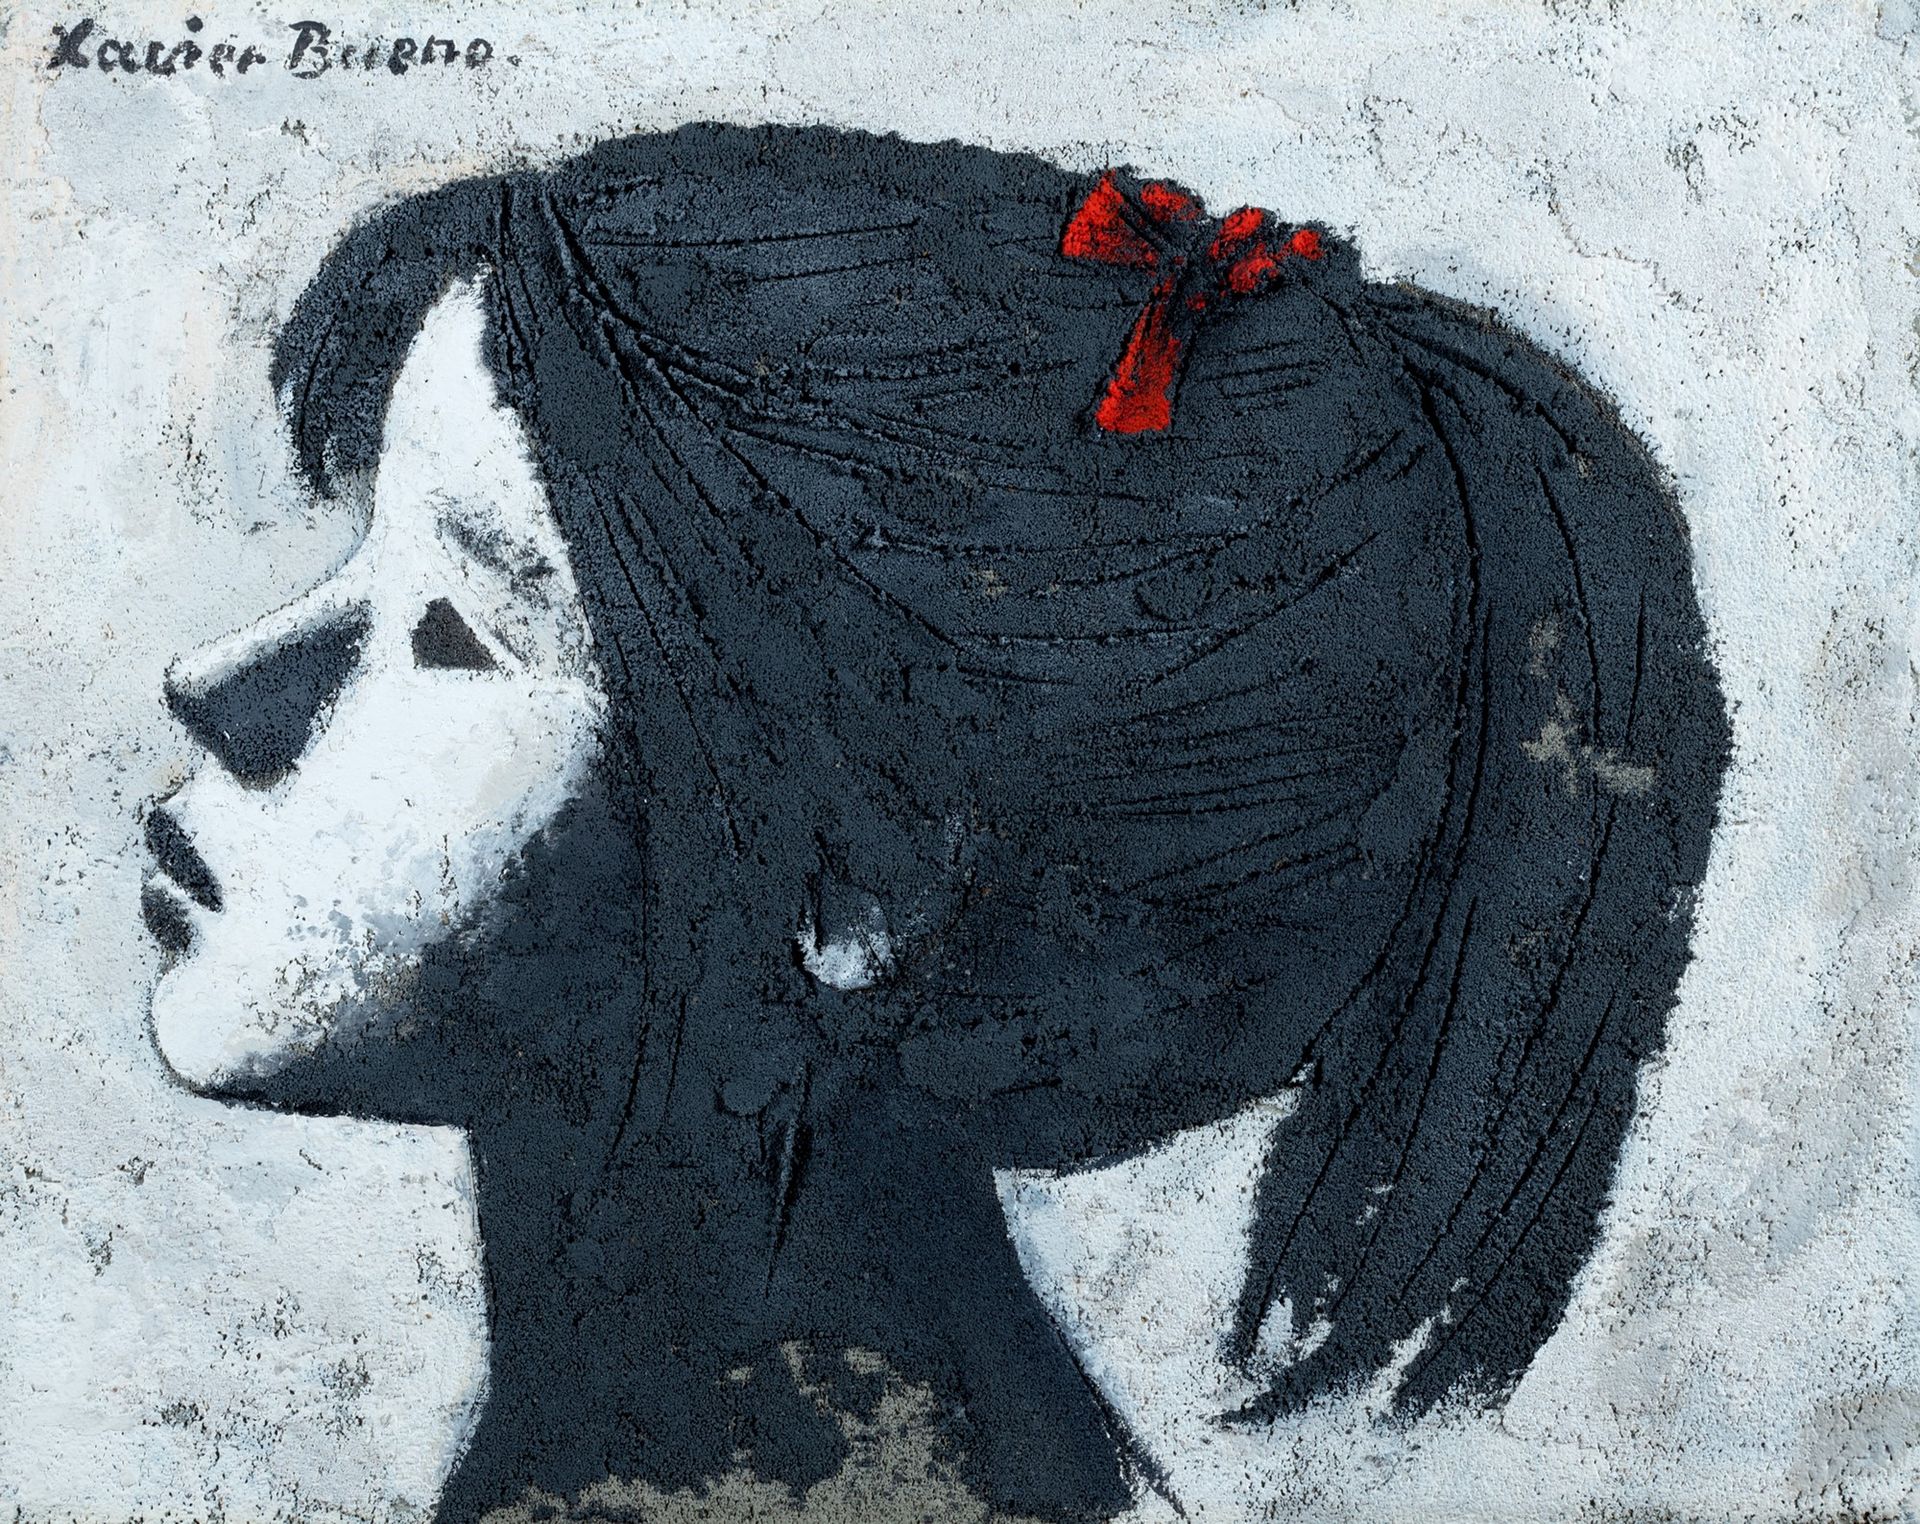 Xavier Bueno Mädchen im Profil

Öl und Sand auf Leinwand
18 x 24 cm
Signiert obe&hellip;